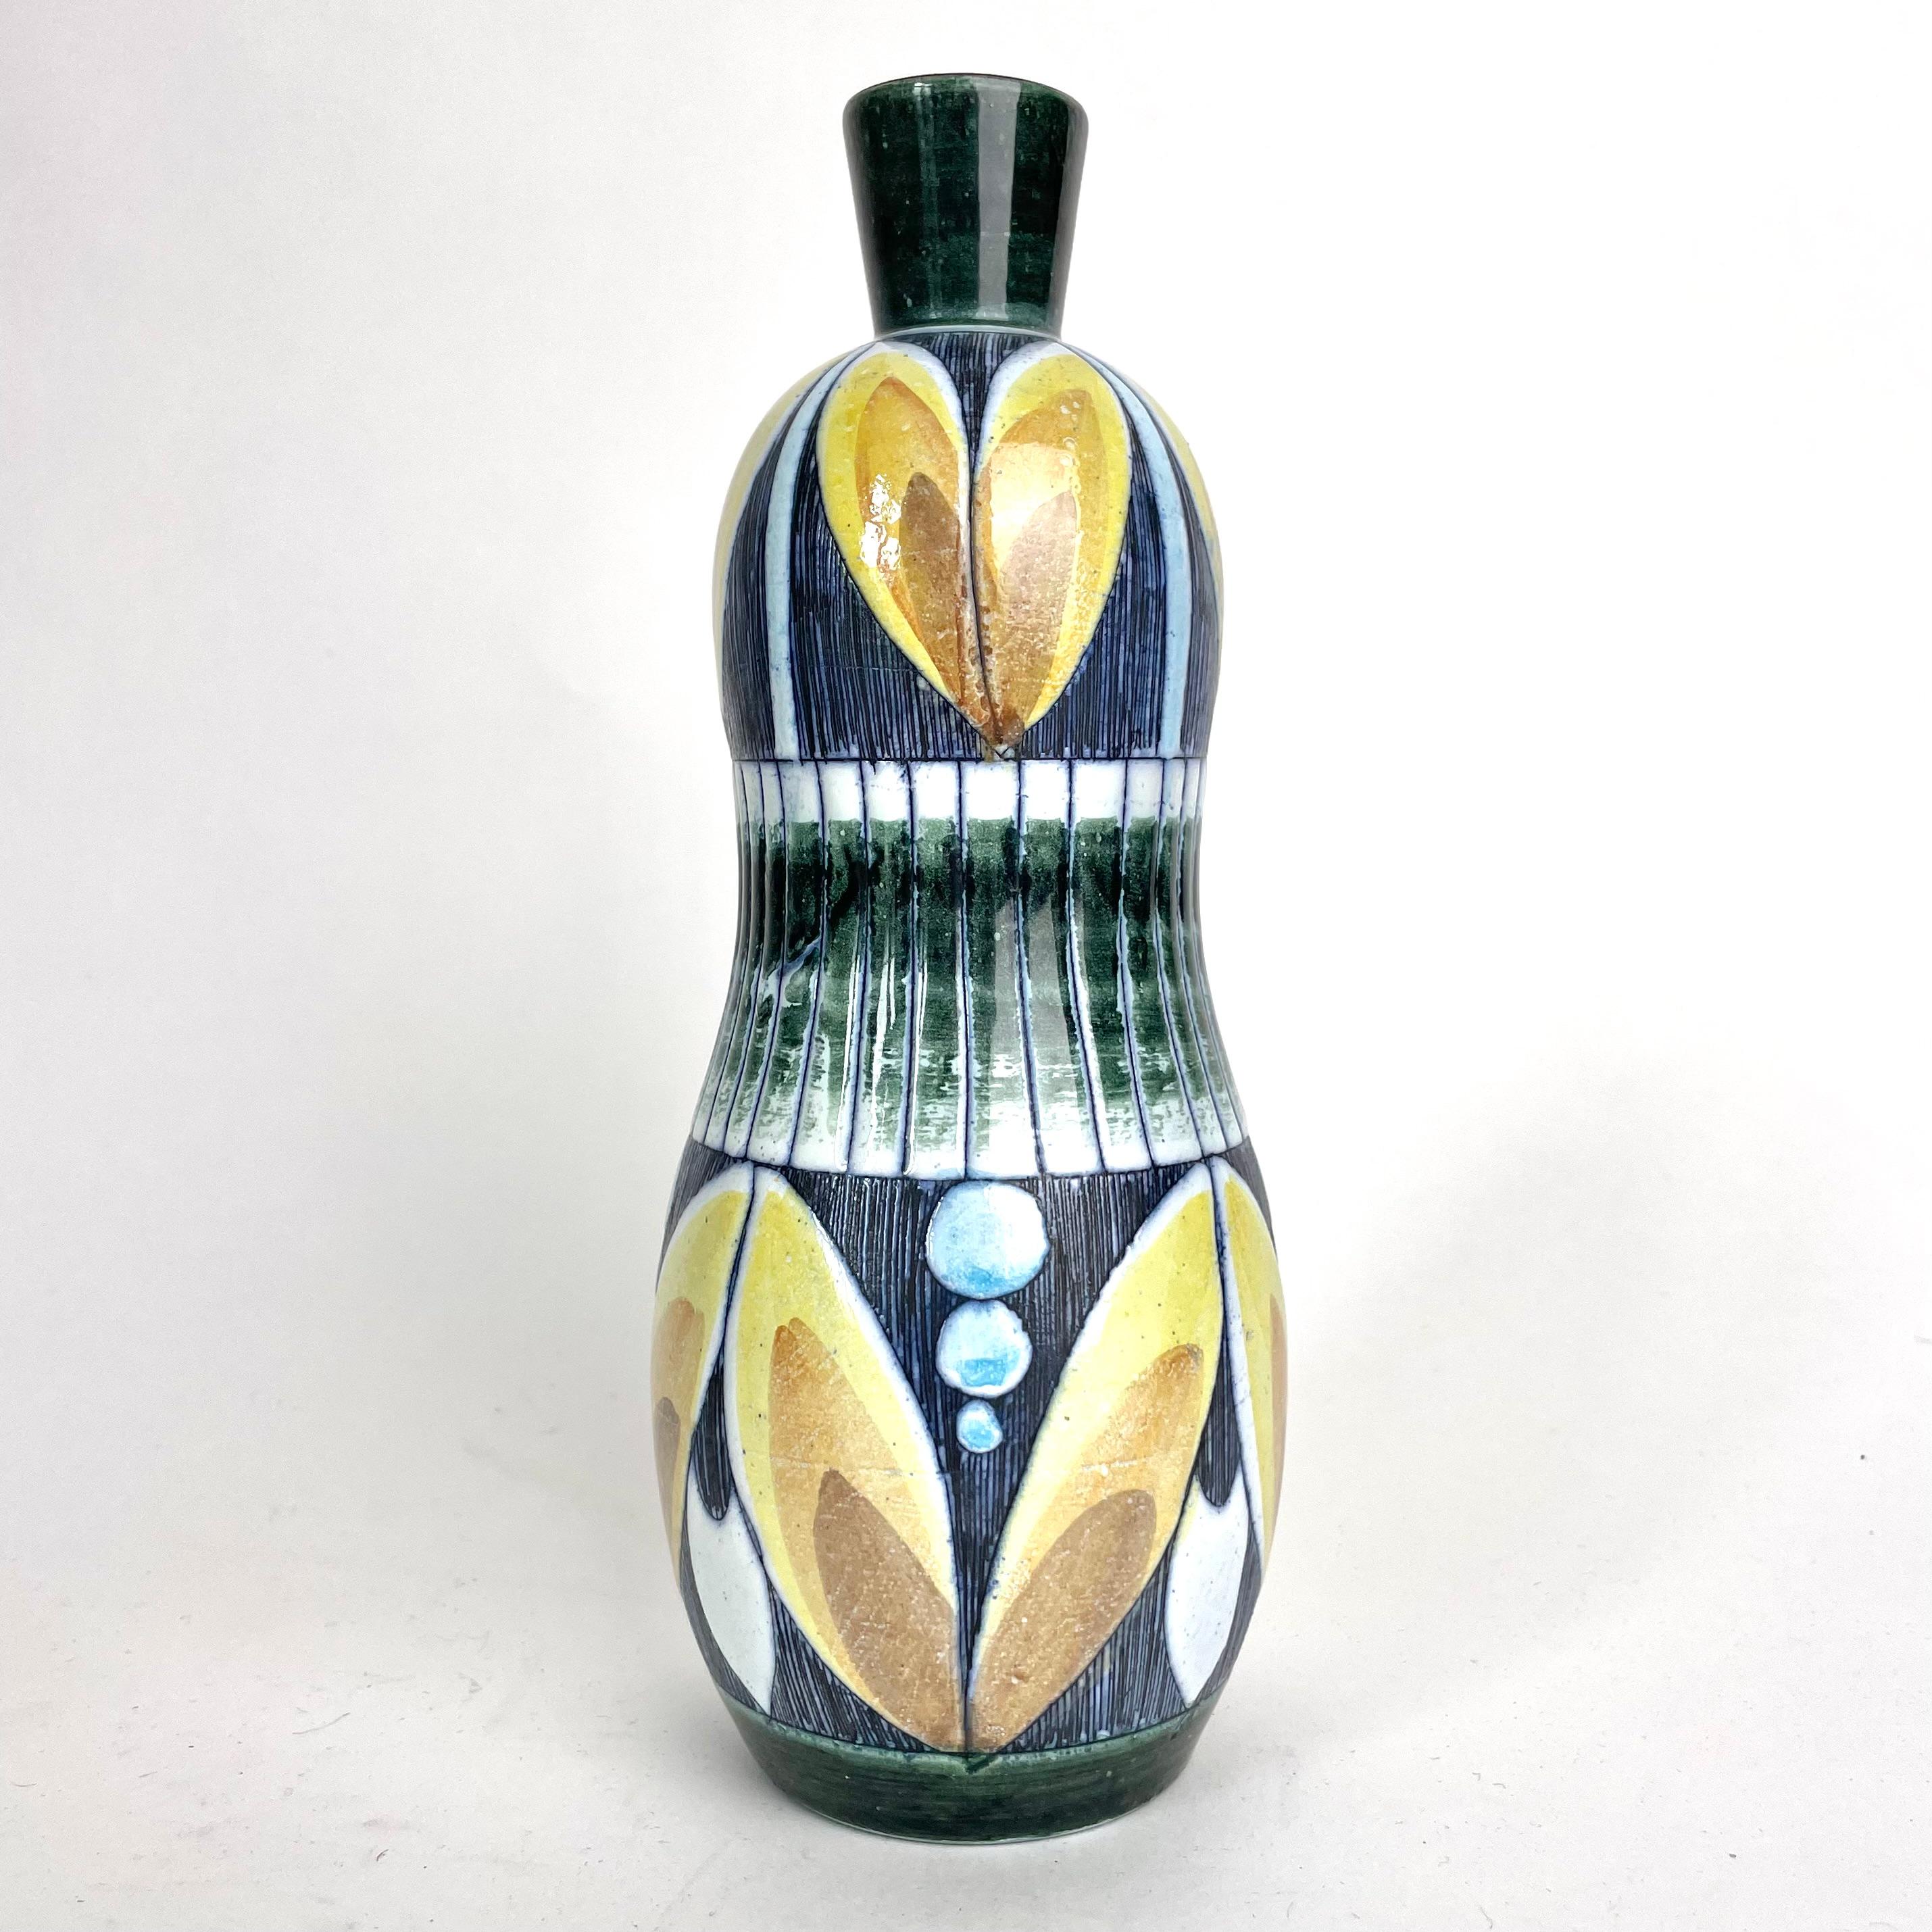 Vase très décoratif en céramique de Tilgmans Keramik, Göteborg, Suède avec un design très actuel des années 1950. Réalisé avec la technique du Sgraffito.

Usure correspondant à l'âge et à l'usage. 